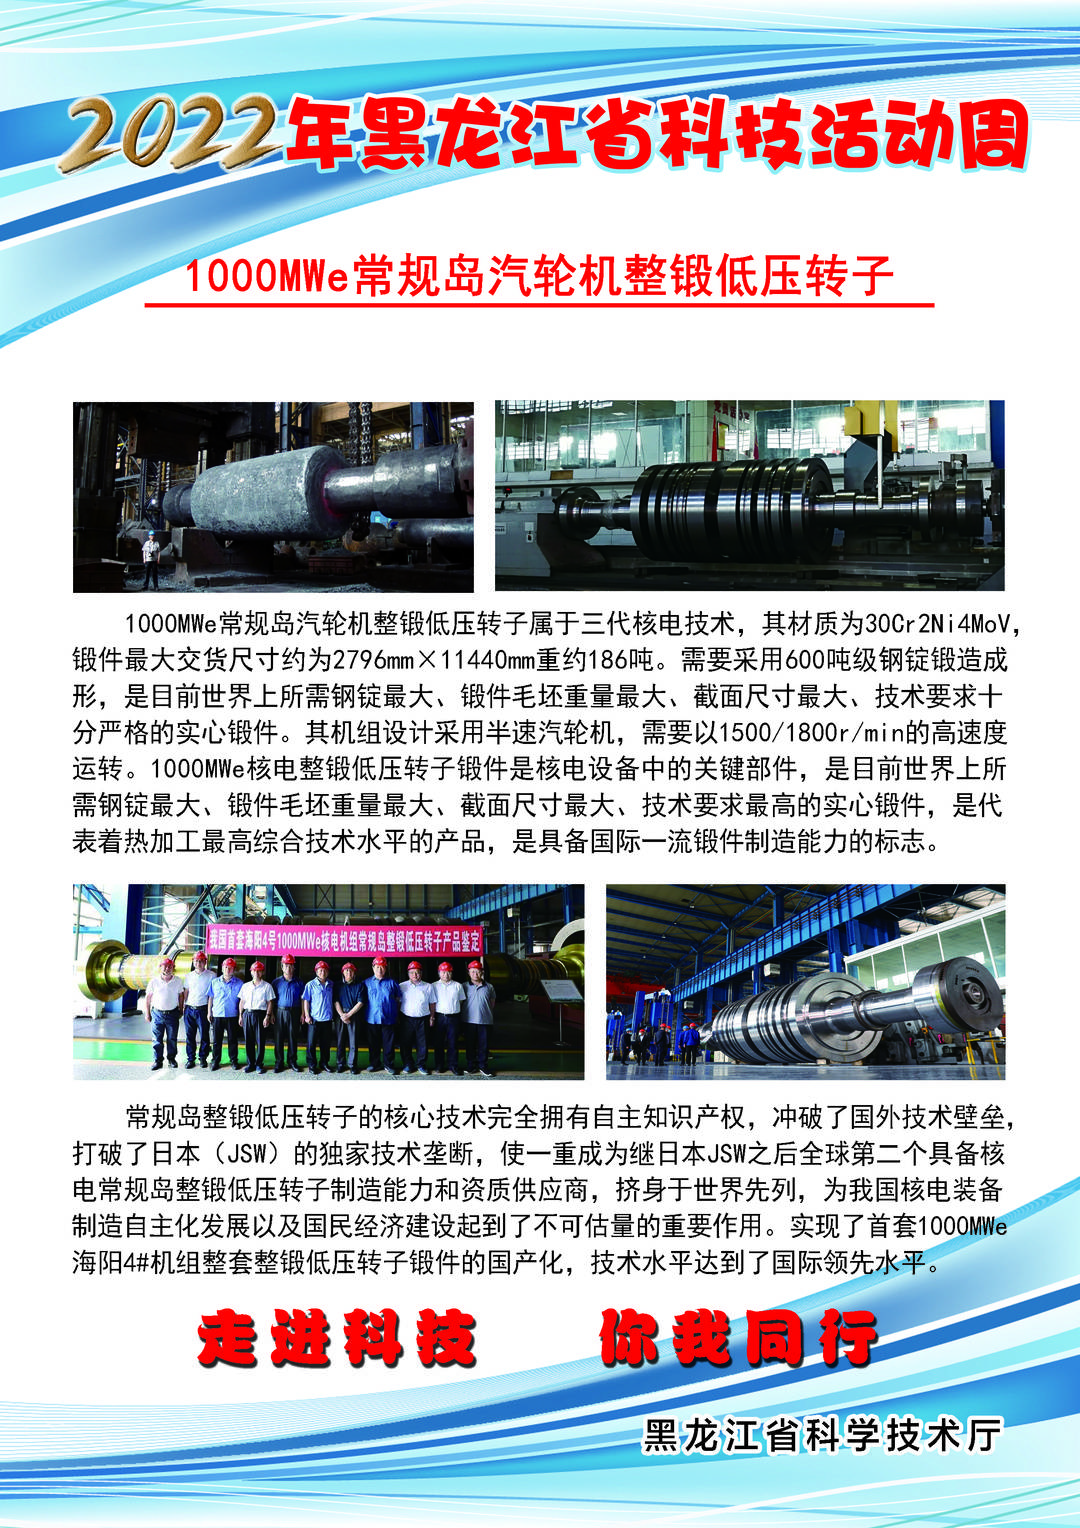 黑龙江省科技创新成果展丨1000MWe常规岛汽轮机整锻低压转子